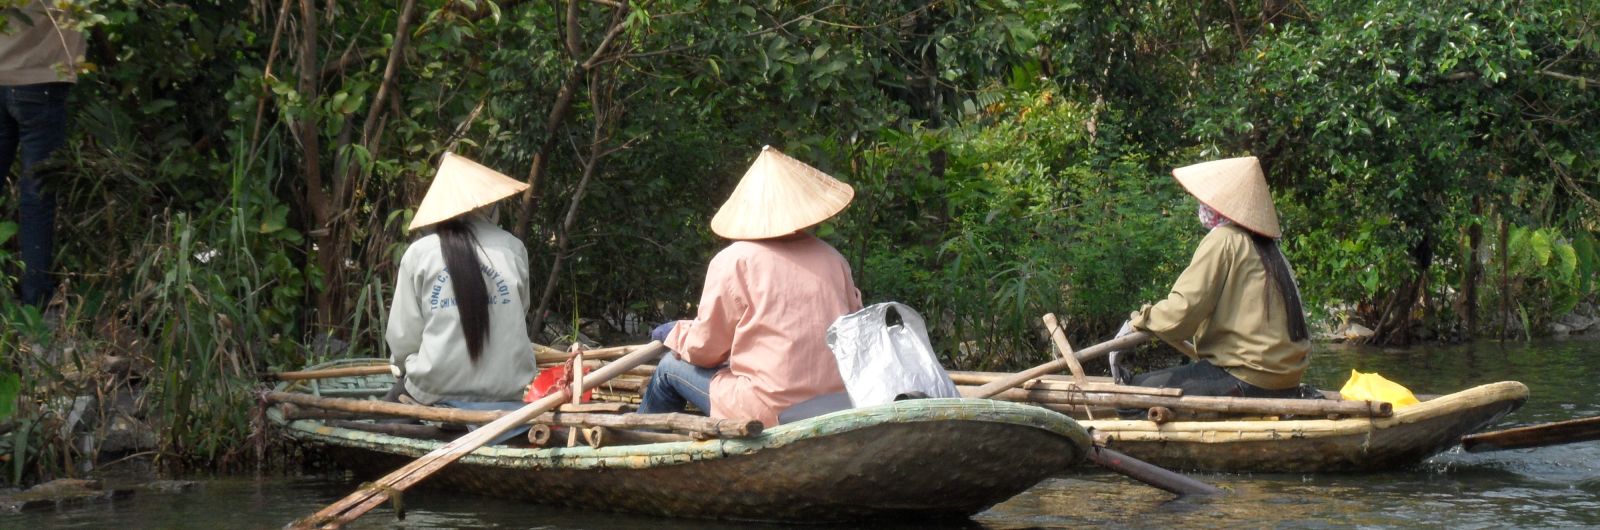 vietnam seoras barcas